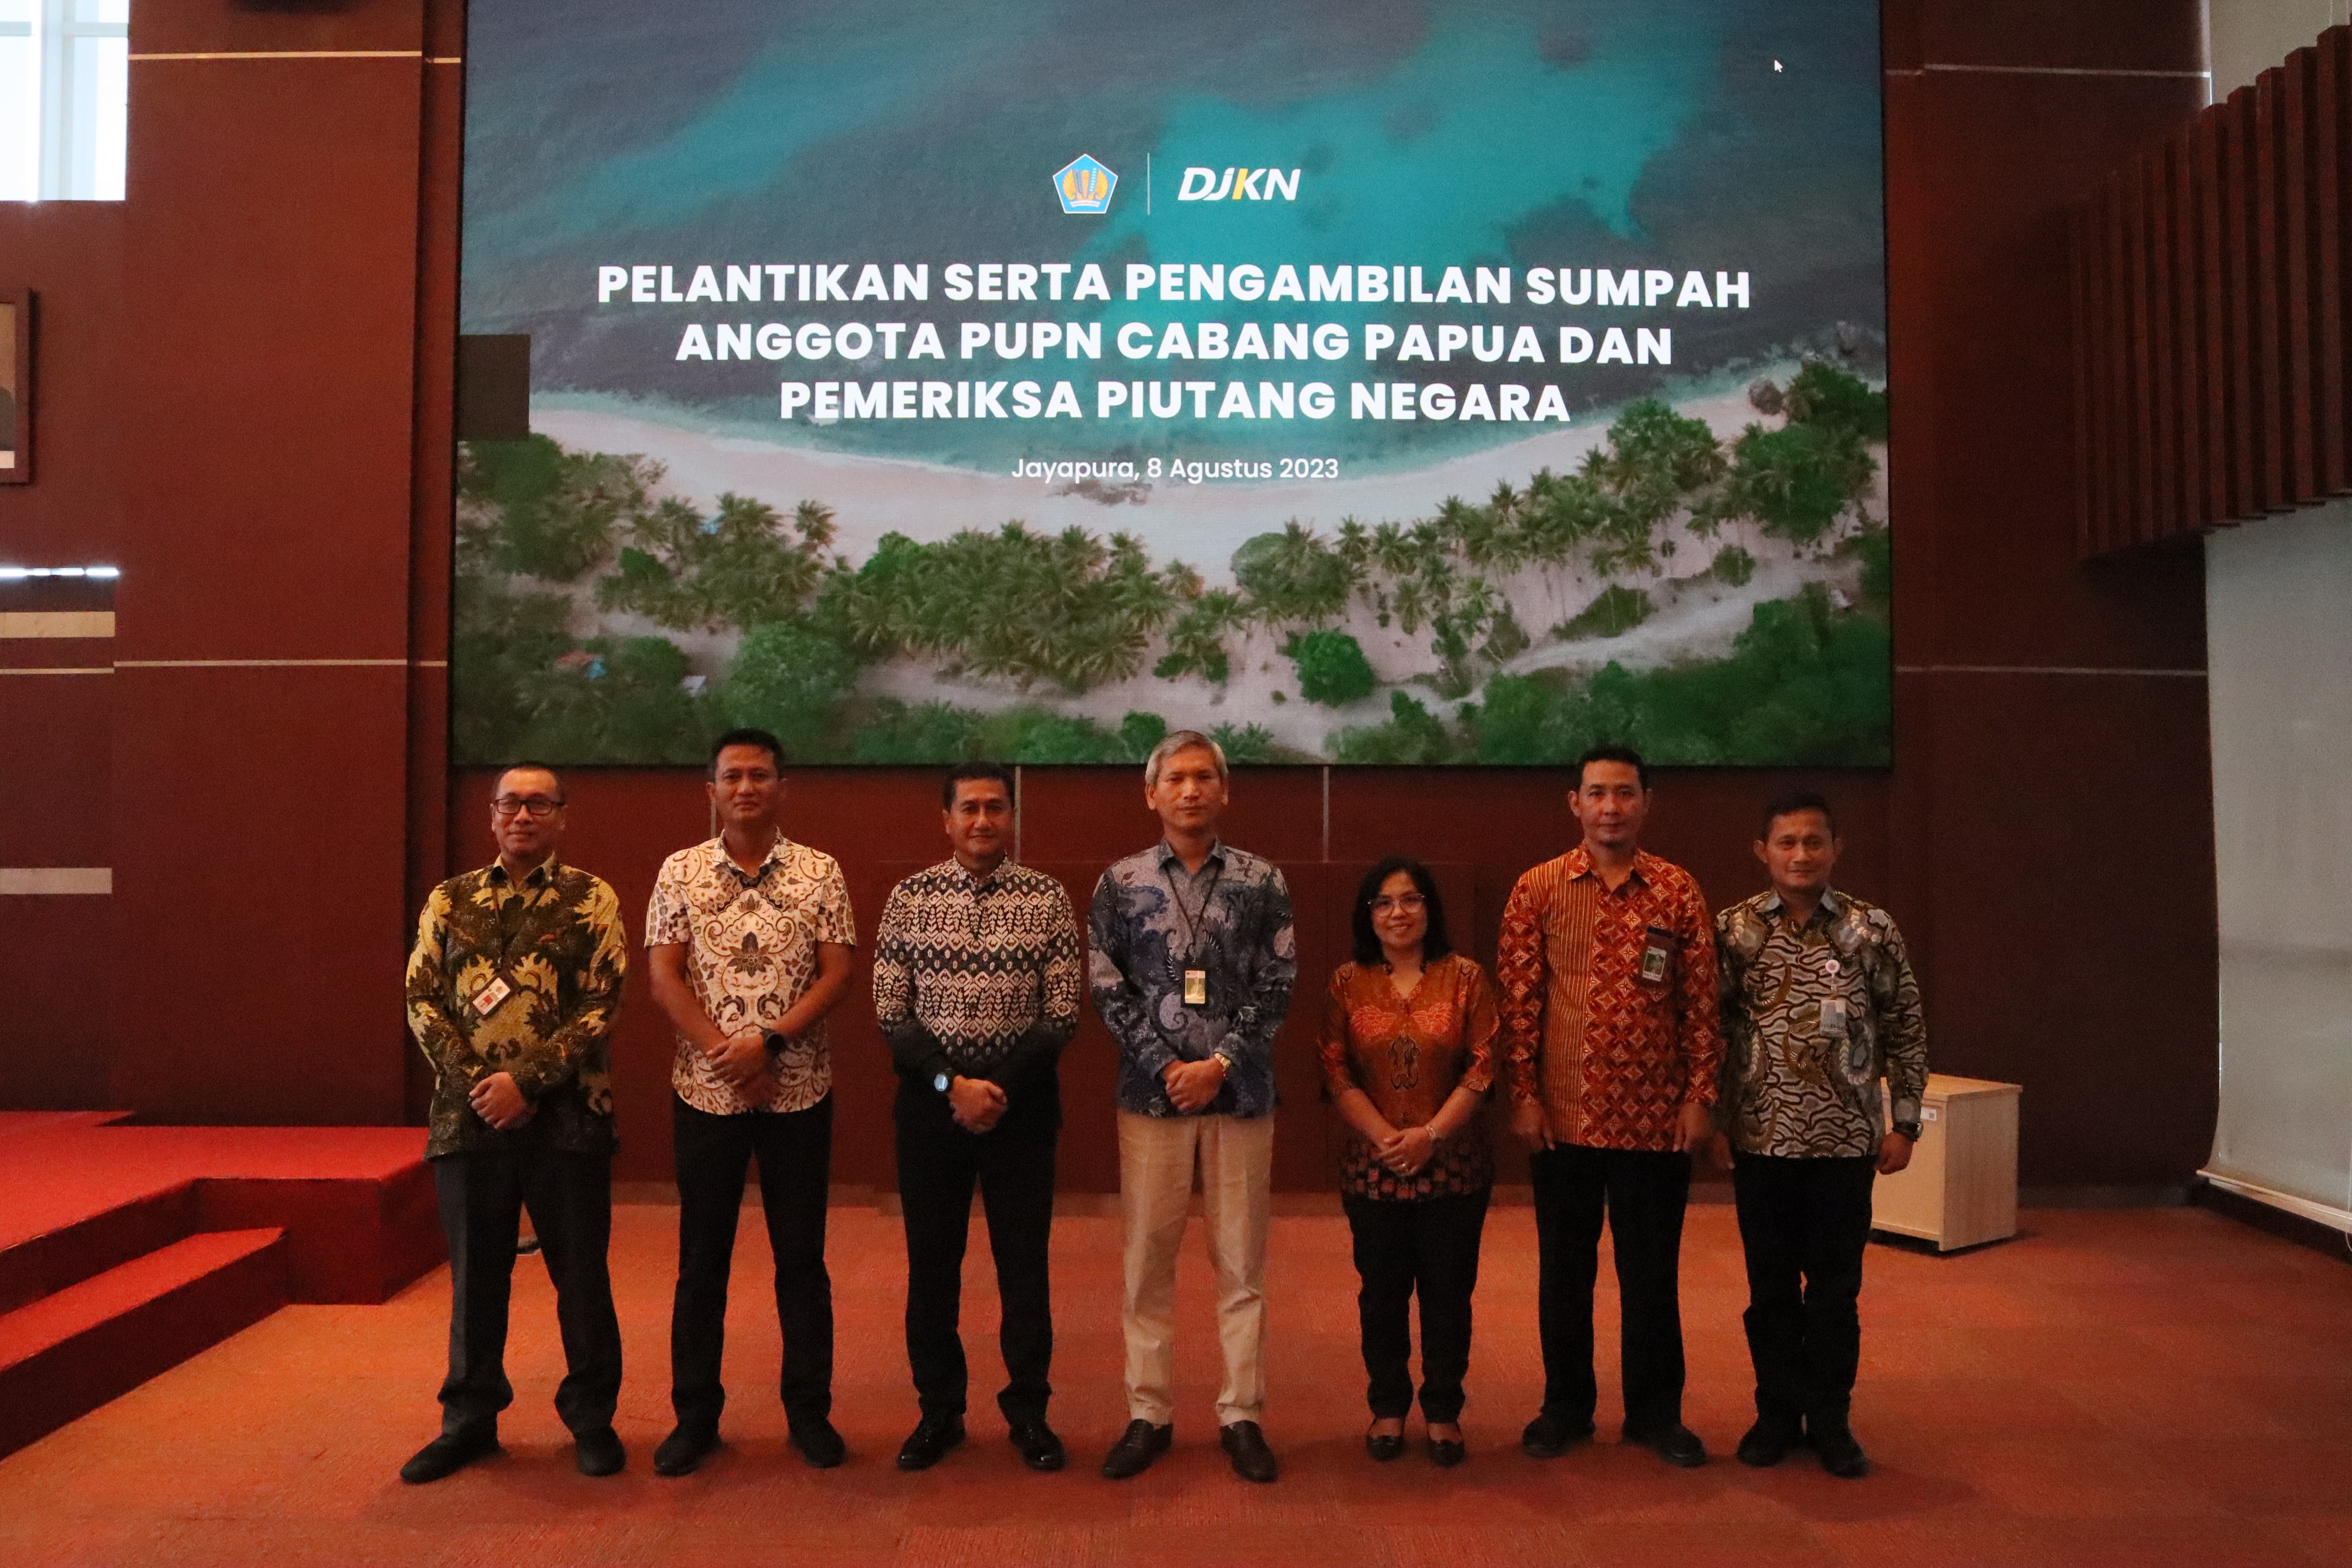 Pelantikan Anggota PUPN Cabang Papua, Pemeriksa Piutang Negara, dan Rapat Koordinasi PUPN Semester I  Tahun 2023